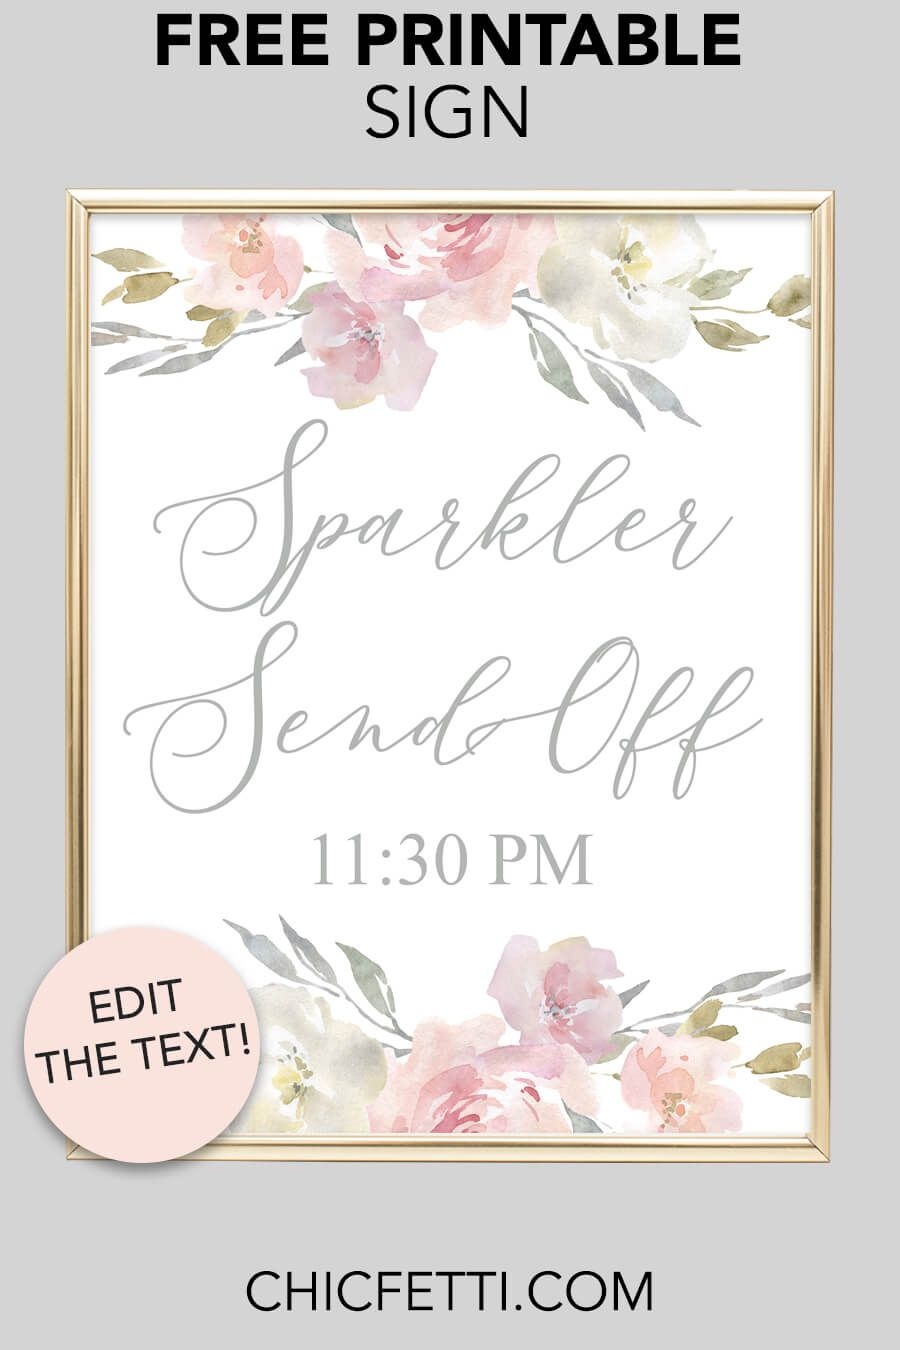 Sparkler Send Off Printable Sign (Blush Floral) | Free Wedding - Free Printable Wedding Sparkler Sign